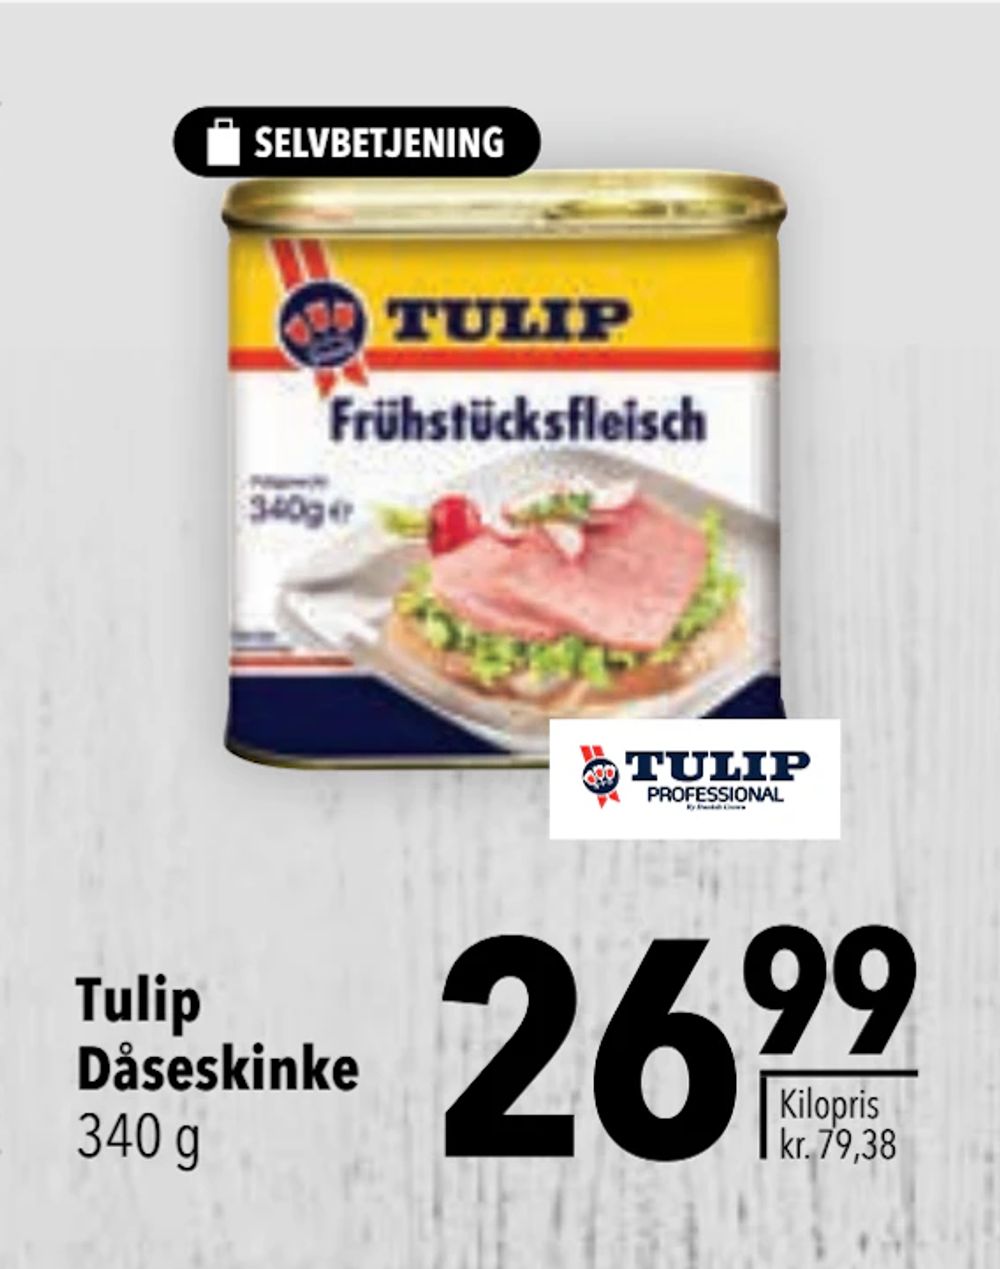 Tilbud på Tulip Dåseskinke fra CITTI til 26,99 kr.